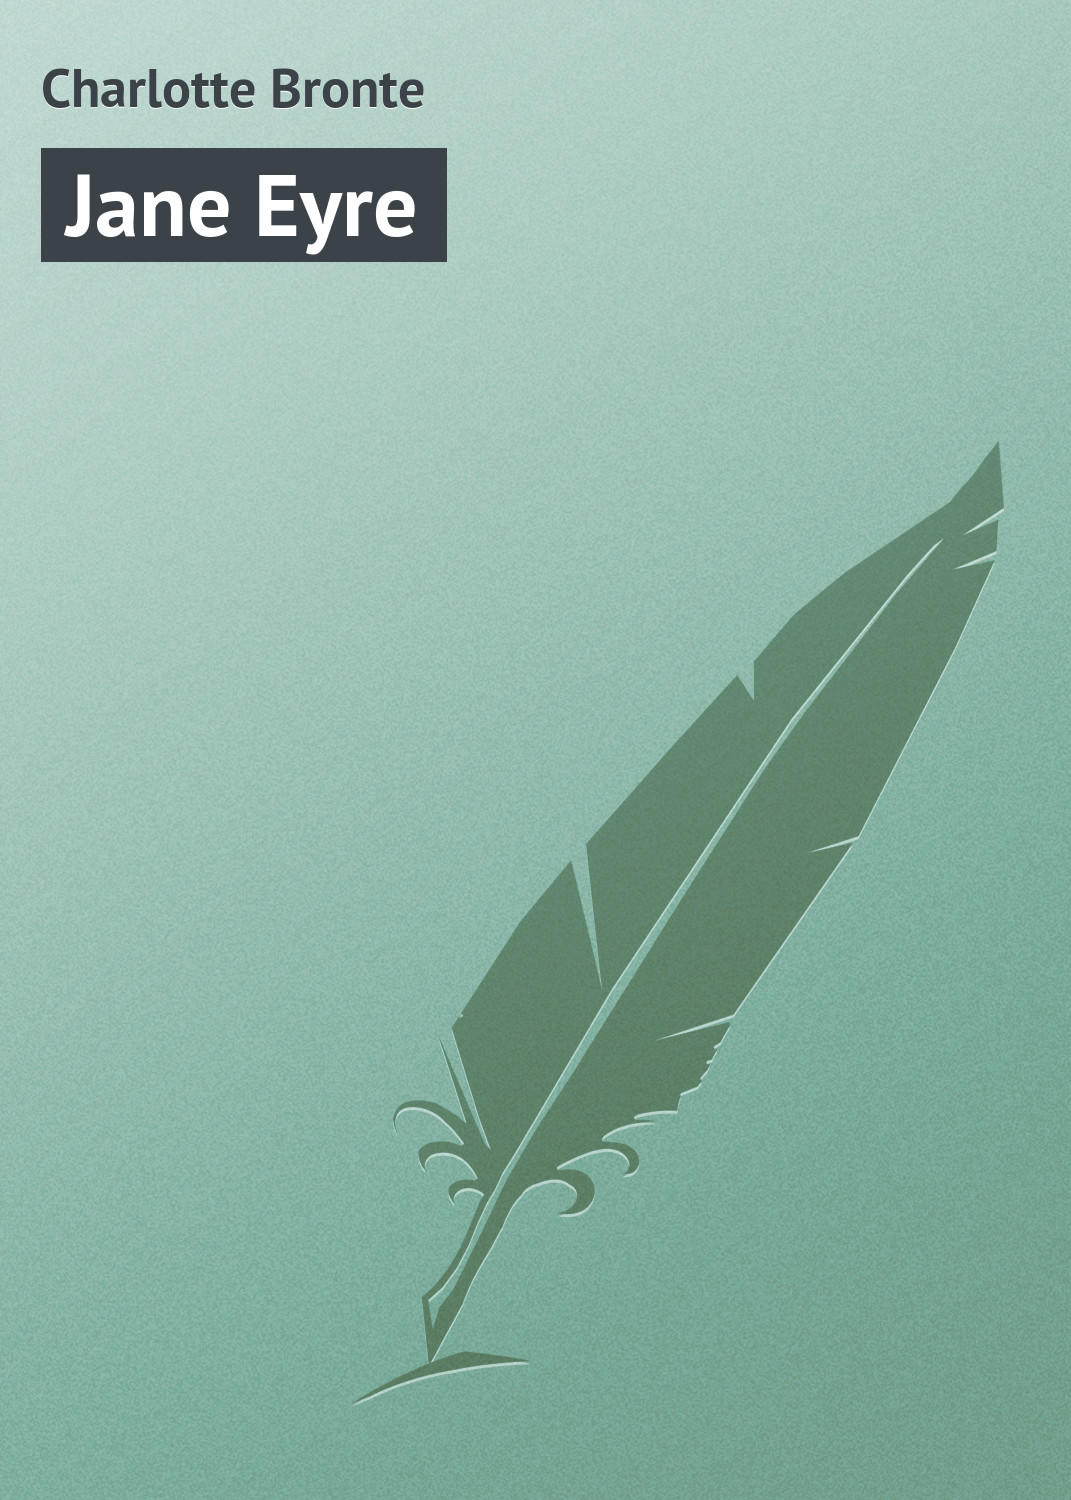 Книга Jane Eyre из серии , созданная Charlotte Bronte, может относится к жанру Зарубежная старинная литература, Зарубежная классика. Стоимость электронной книги Jane Eyre с идентификатором 21103510 составляет 5.99 руб.